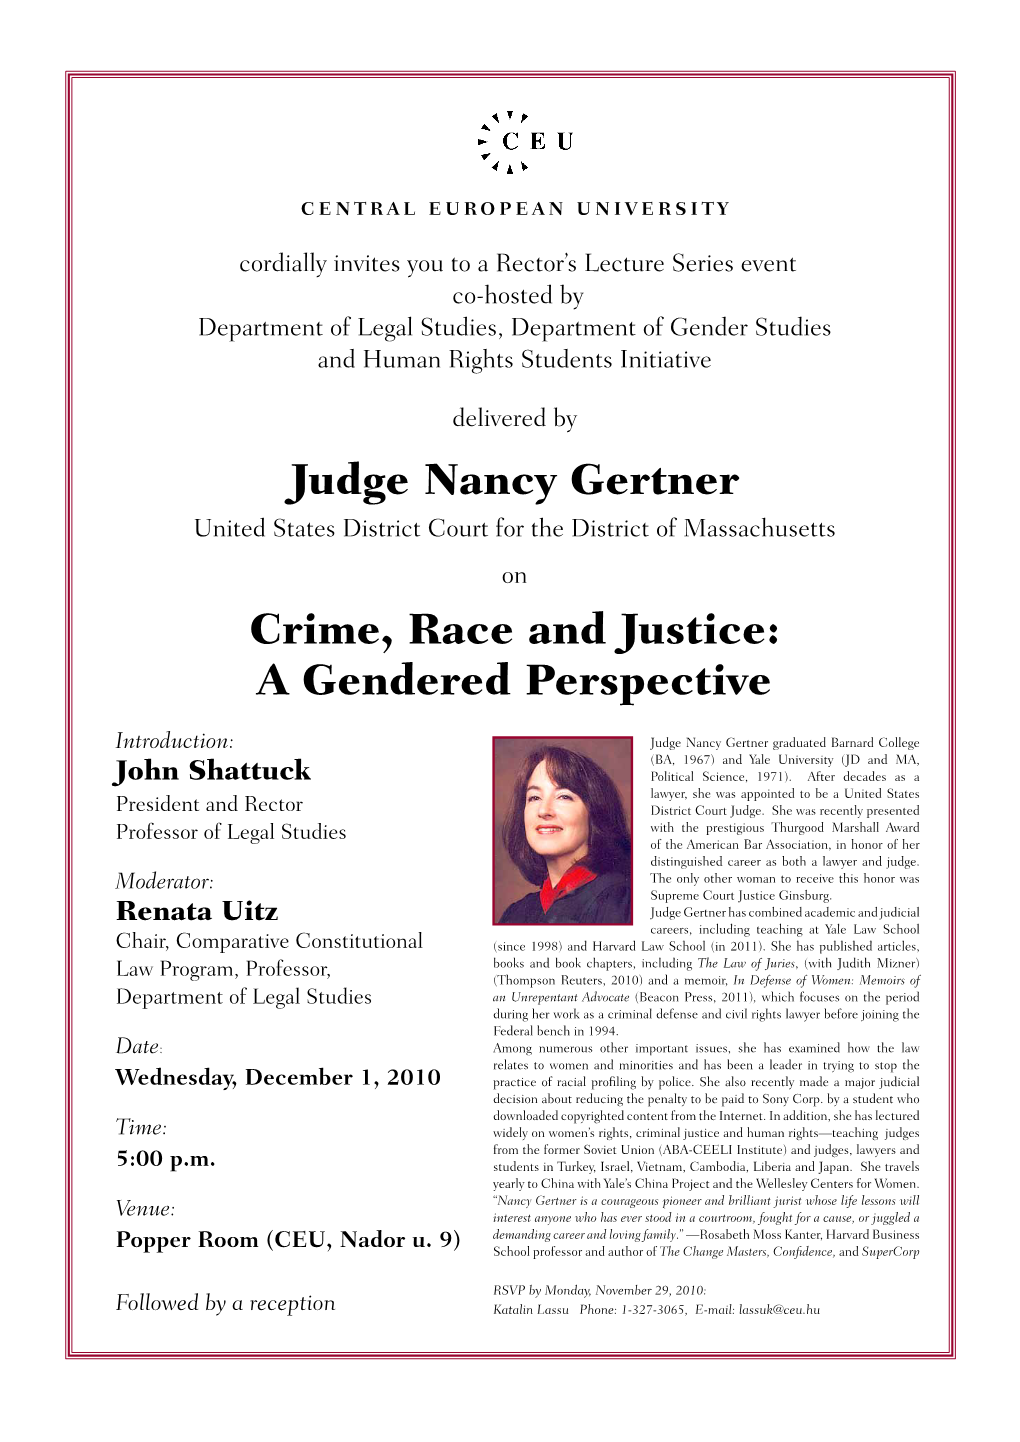 Judge Nancy Gertner Crime, Race and Justice